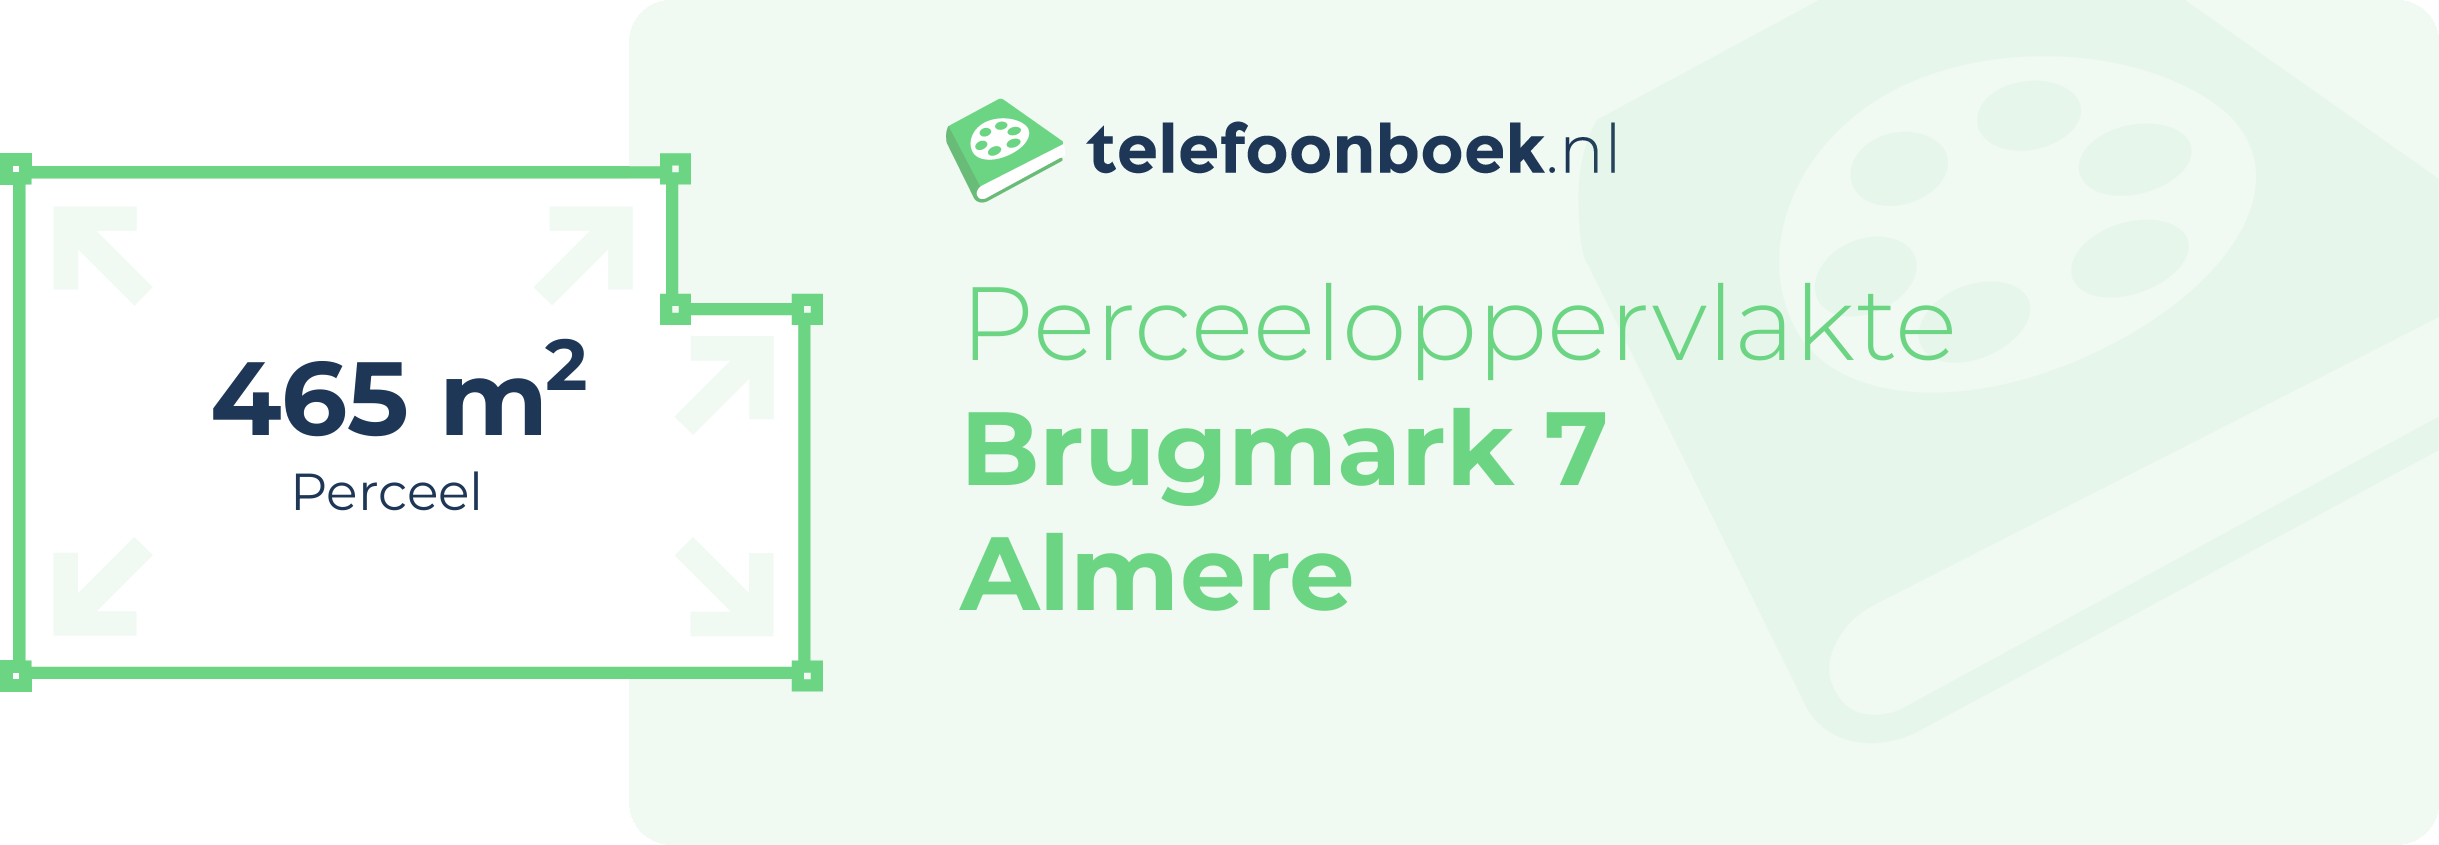 Perceeloppervlakte Brugmark 7 Almere